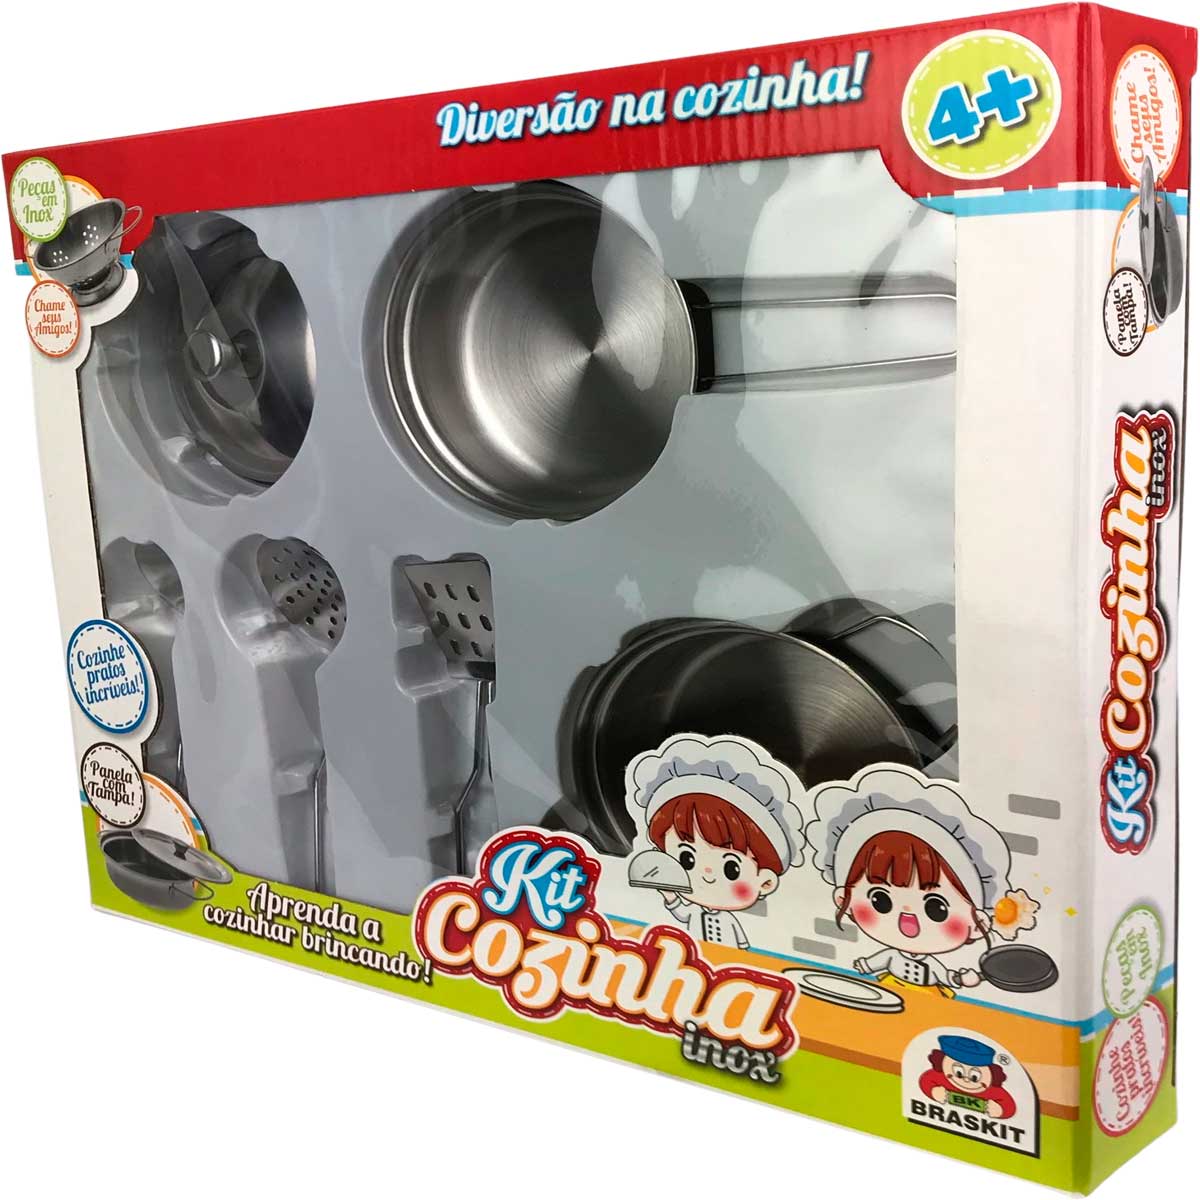 Brinquedo Cozinha Infantil Jogo De Chá Metal Decorado 900-0 em